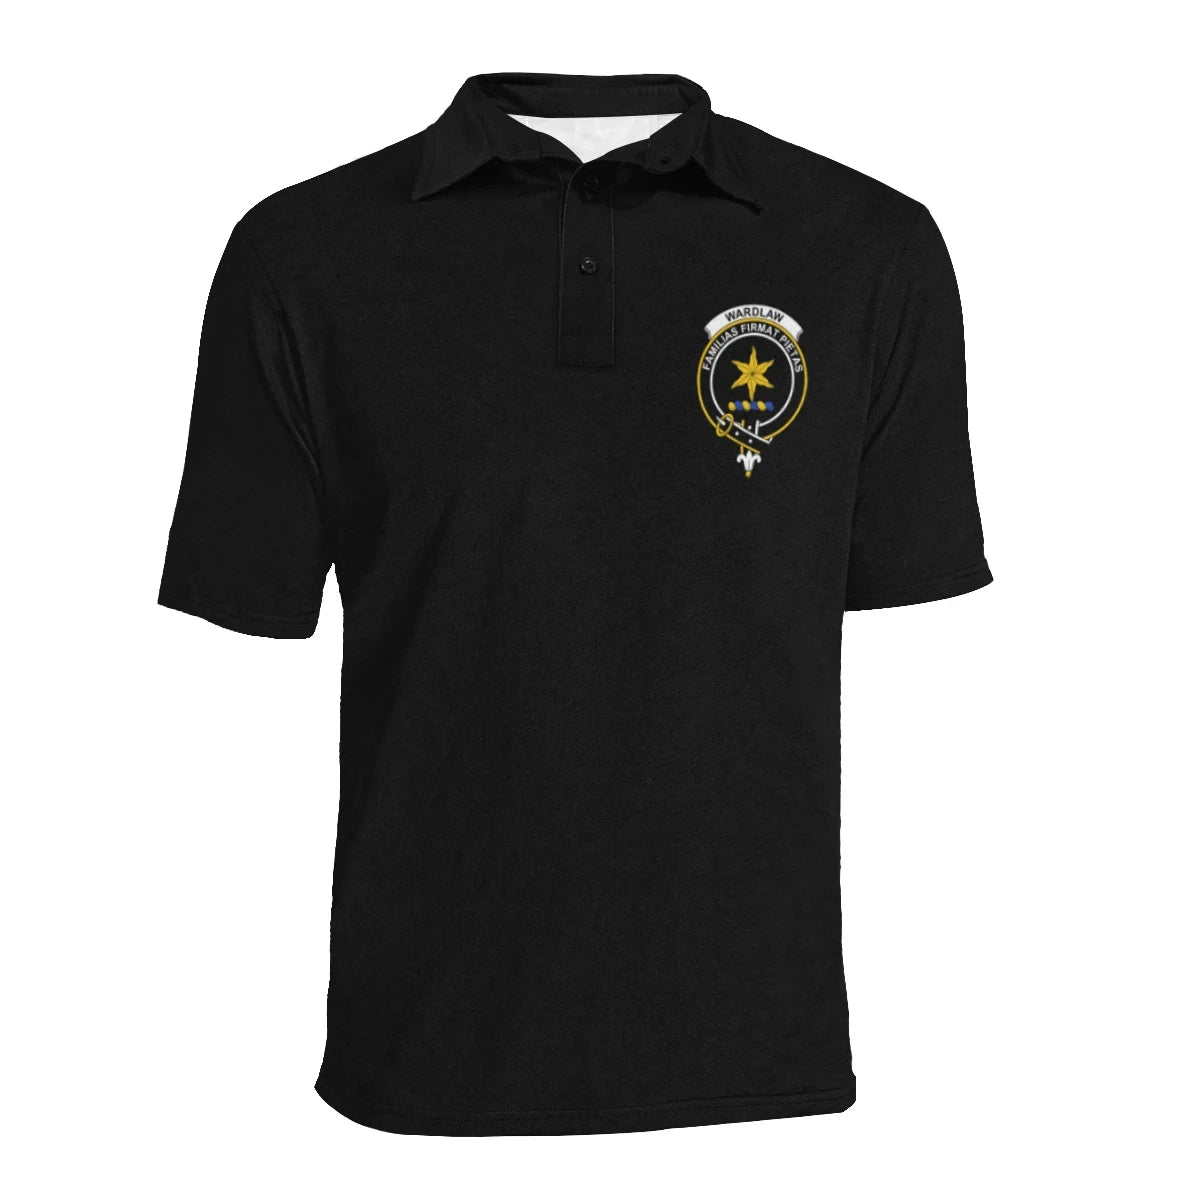 Wardlaw Clan Polo Shirt, Scottish Tartan Wardlaw Clans Polo Shirt Full Black Style